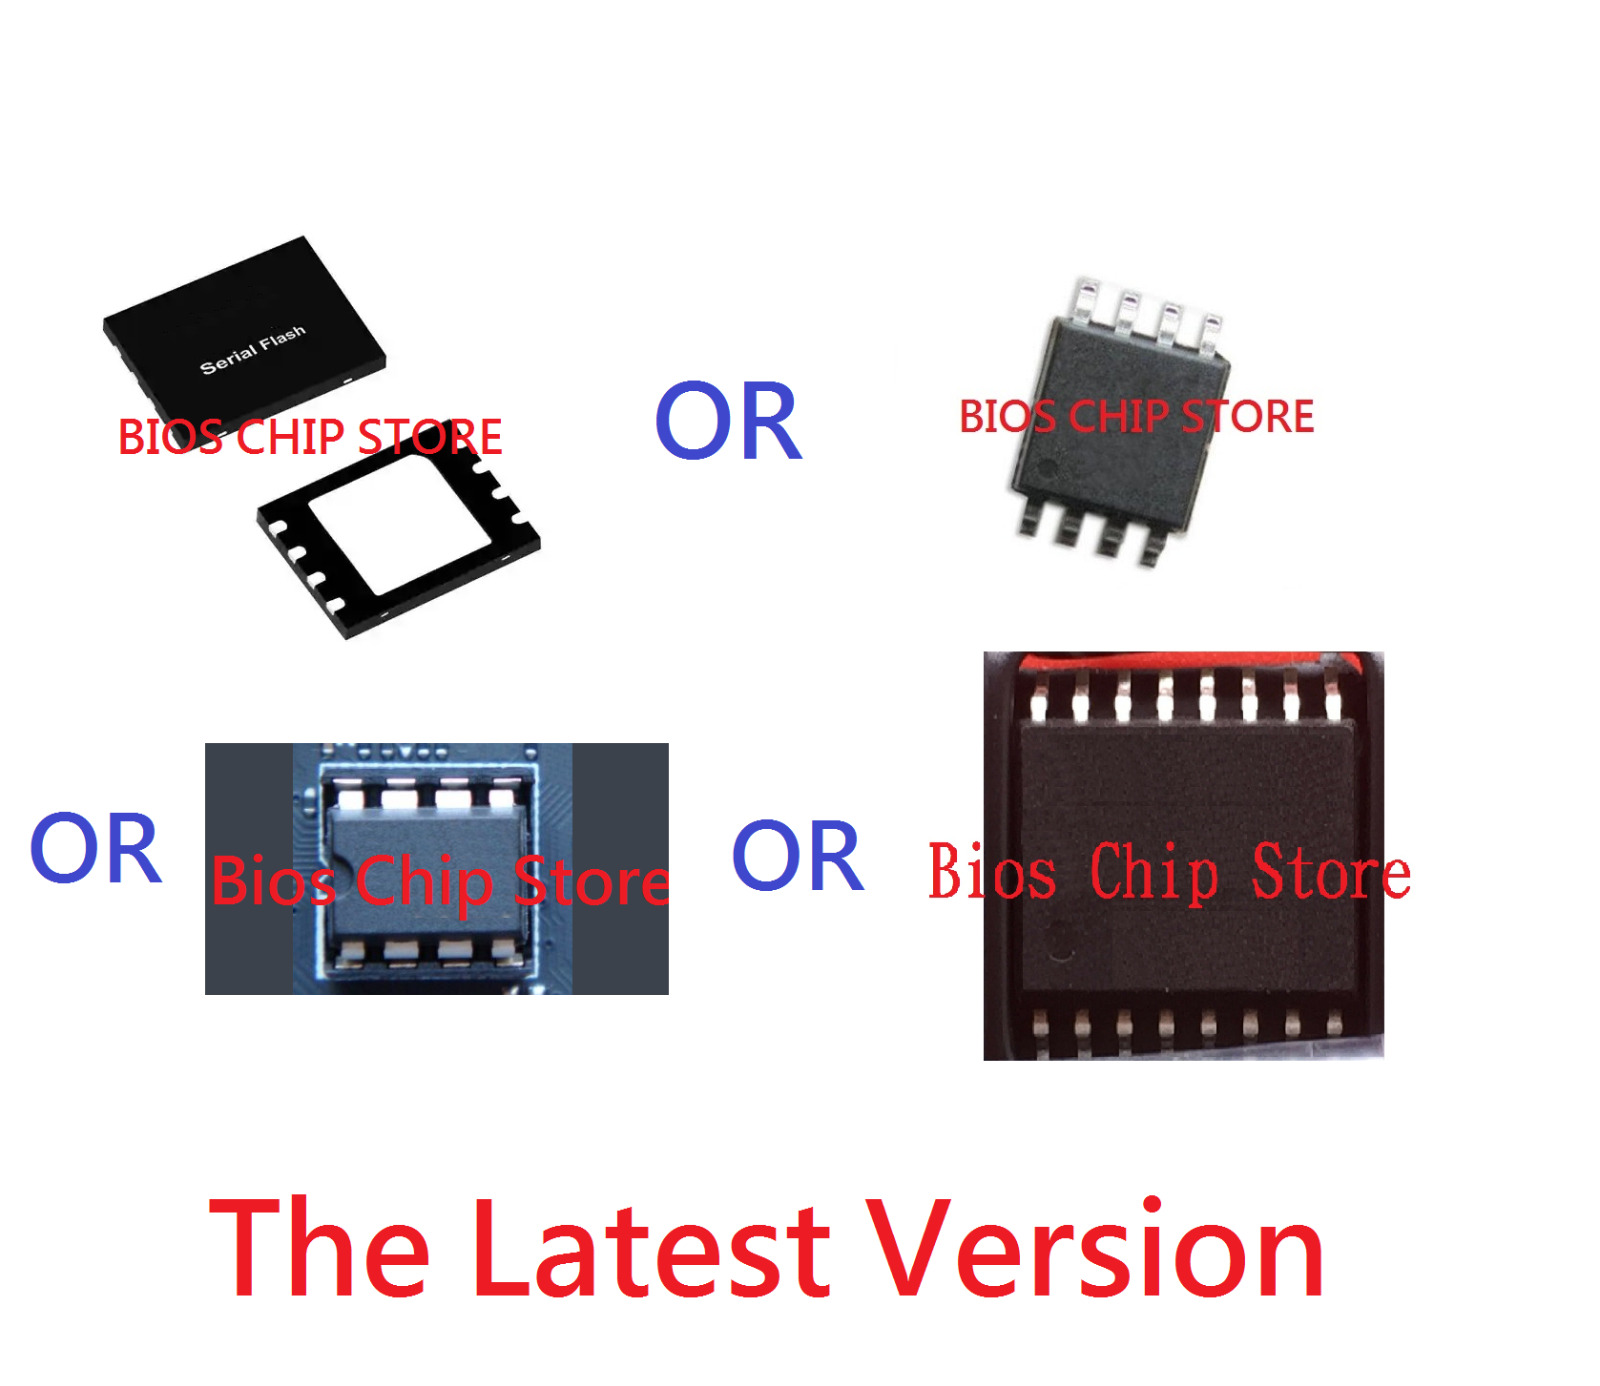 BIOS CHIP for ASUS M5A99X EVO R2.0, M5A97, M5A87, M5A88-M, M5A78L series